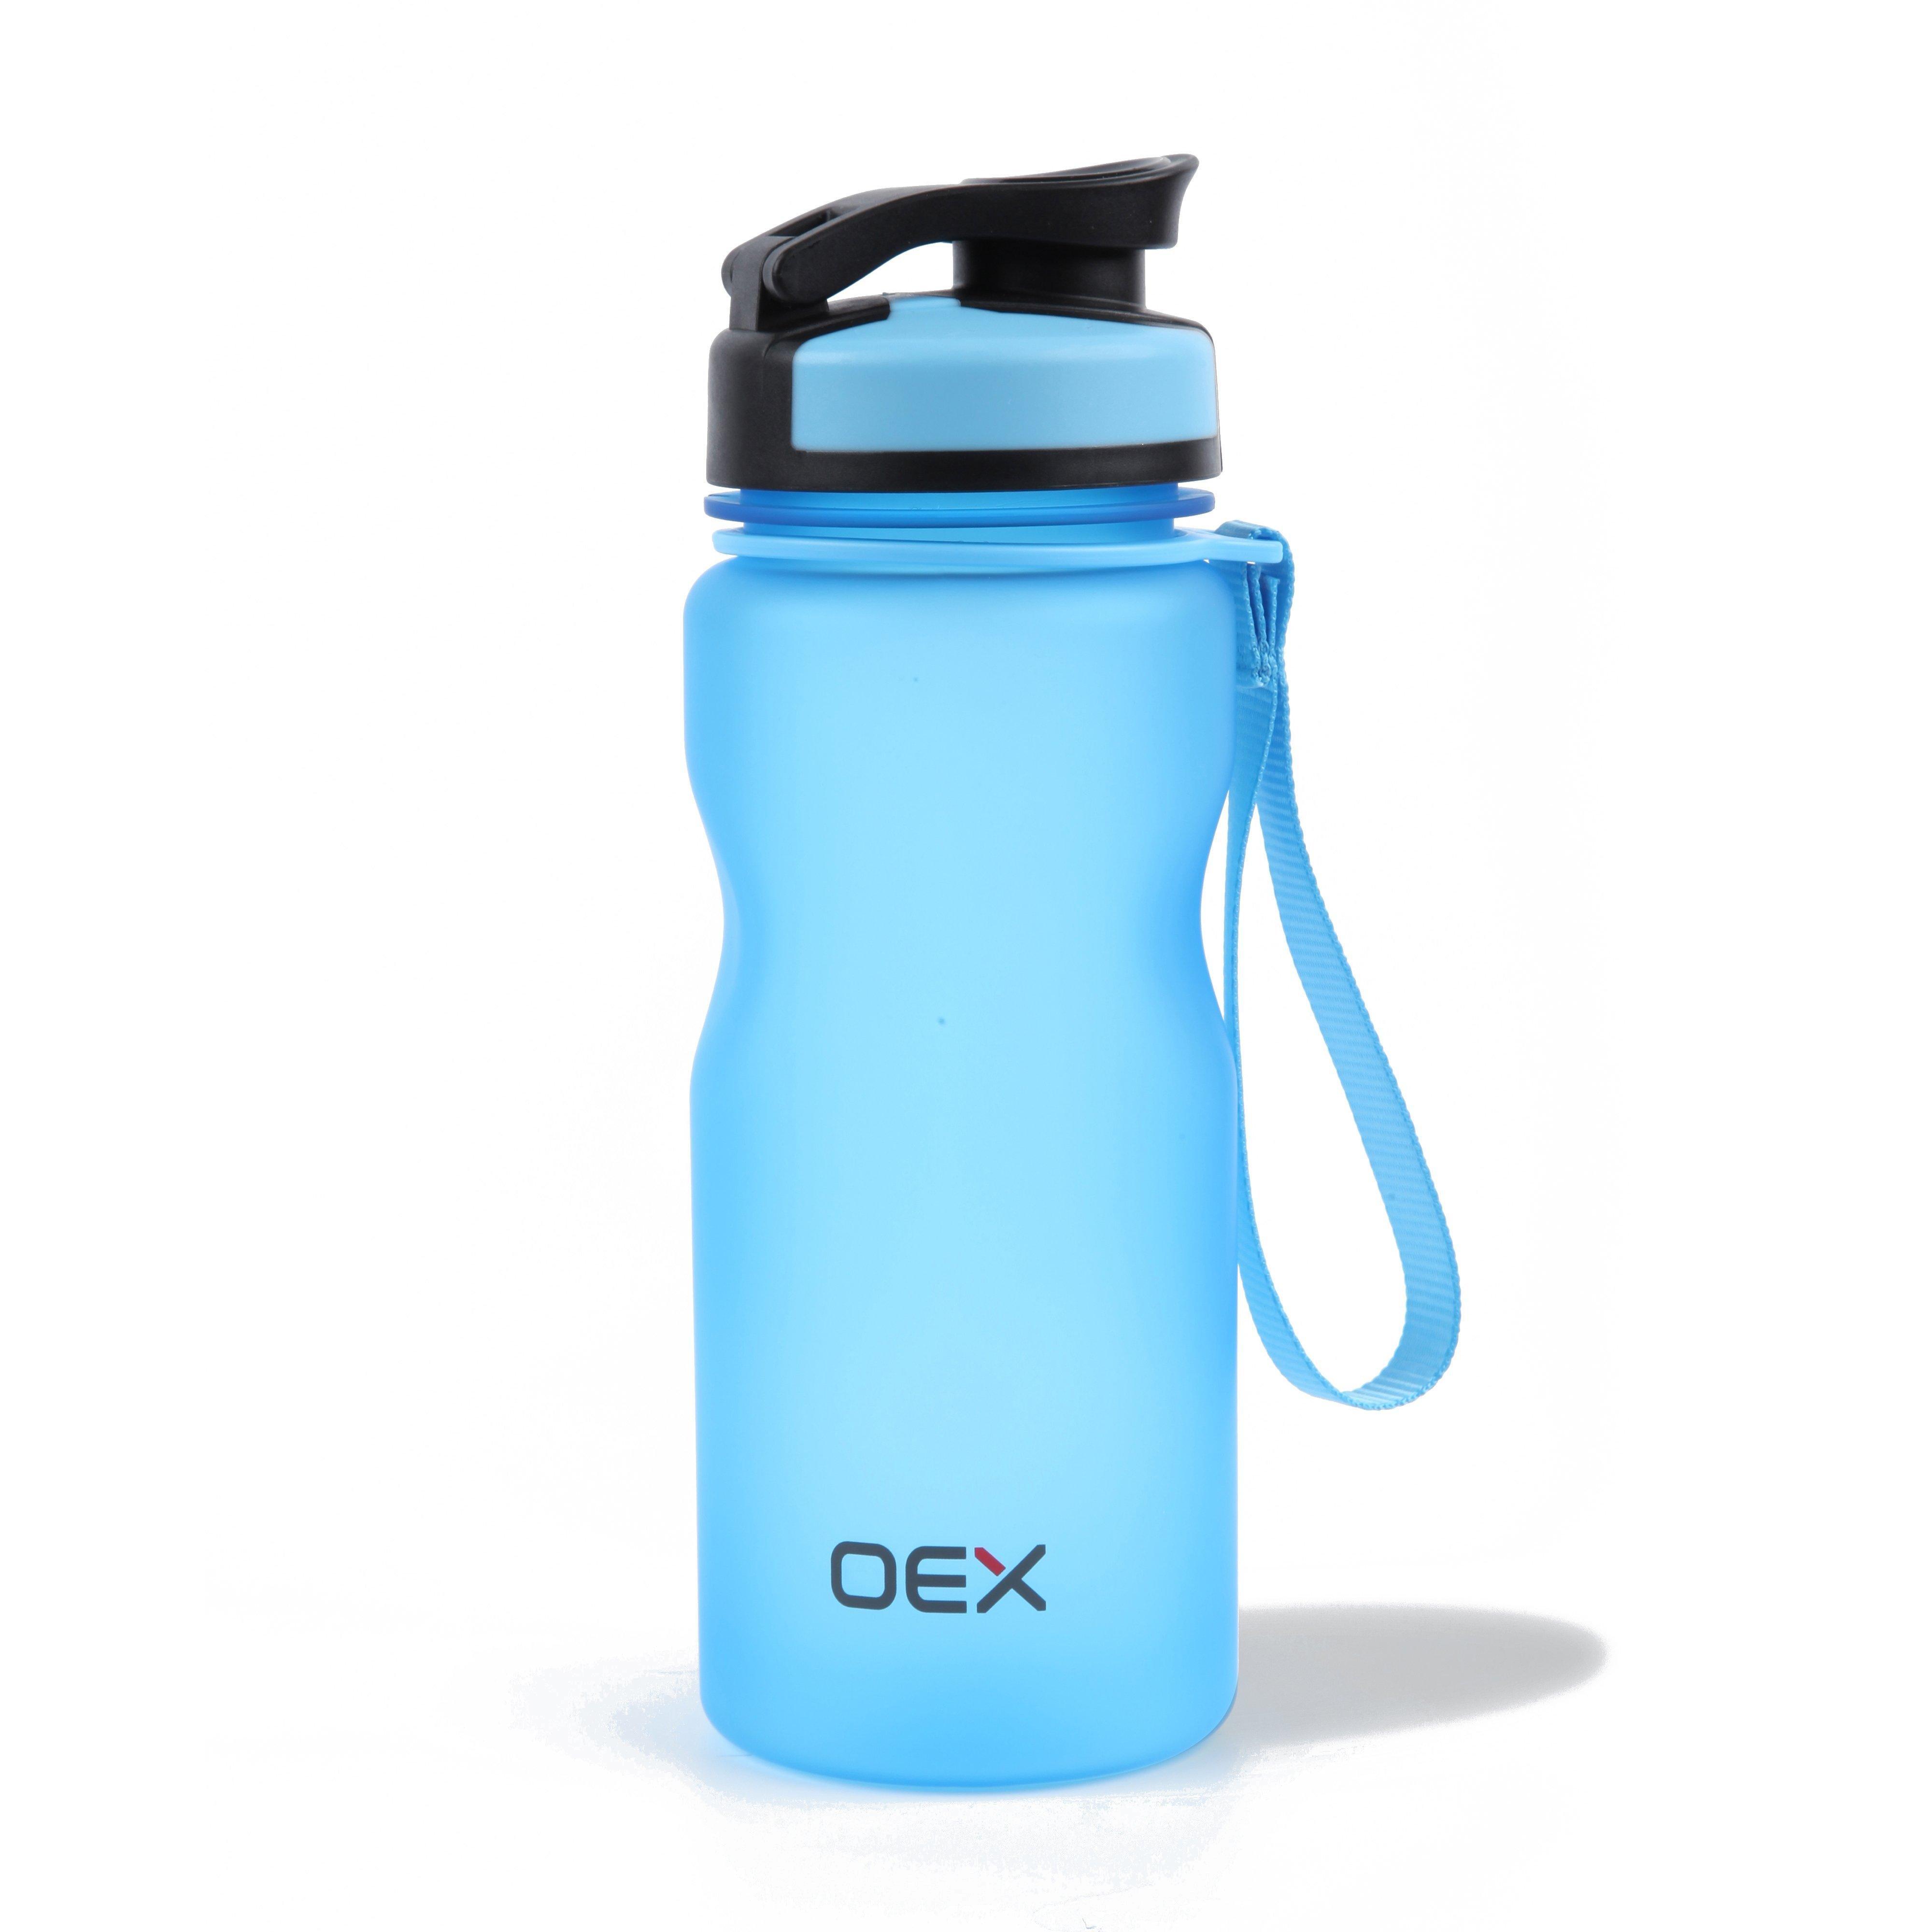 OEX Flip Bottle 600ml Review